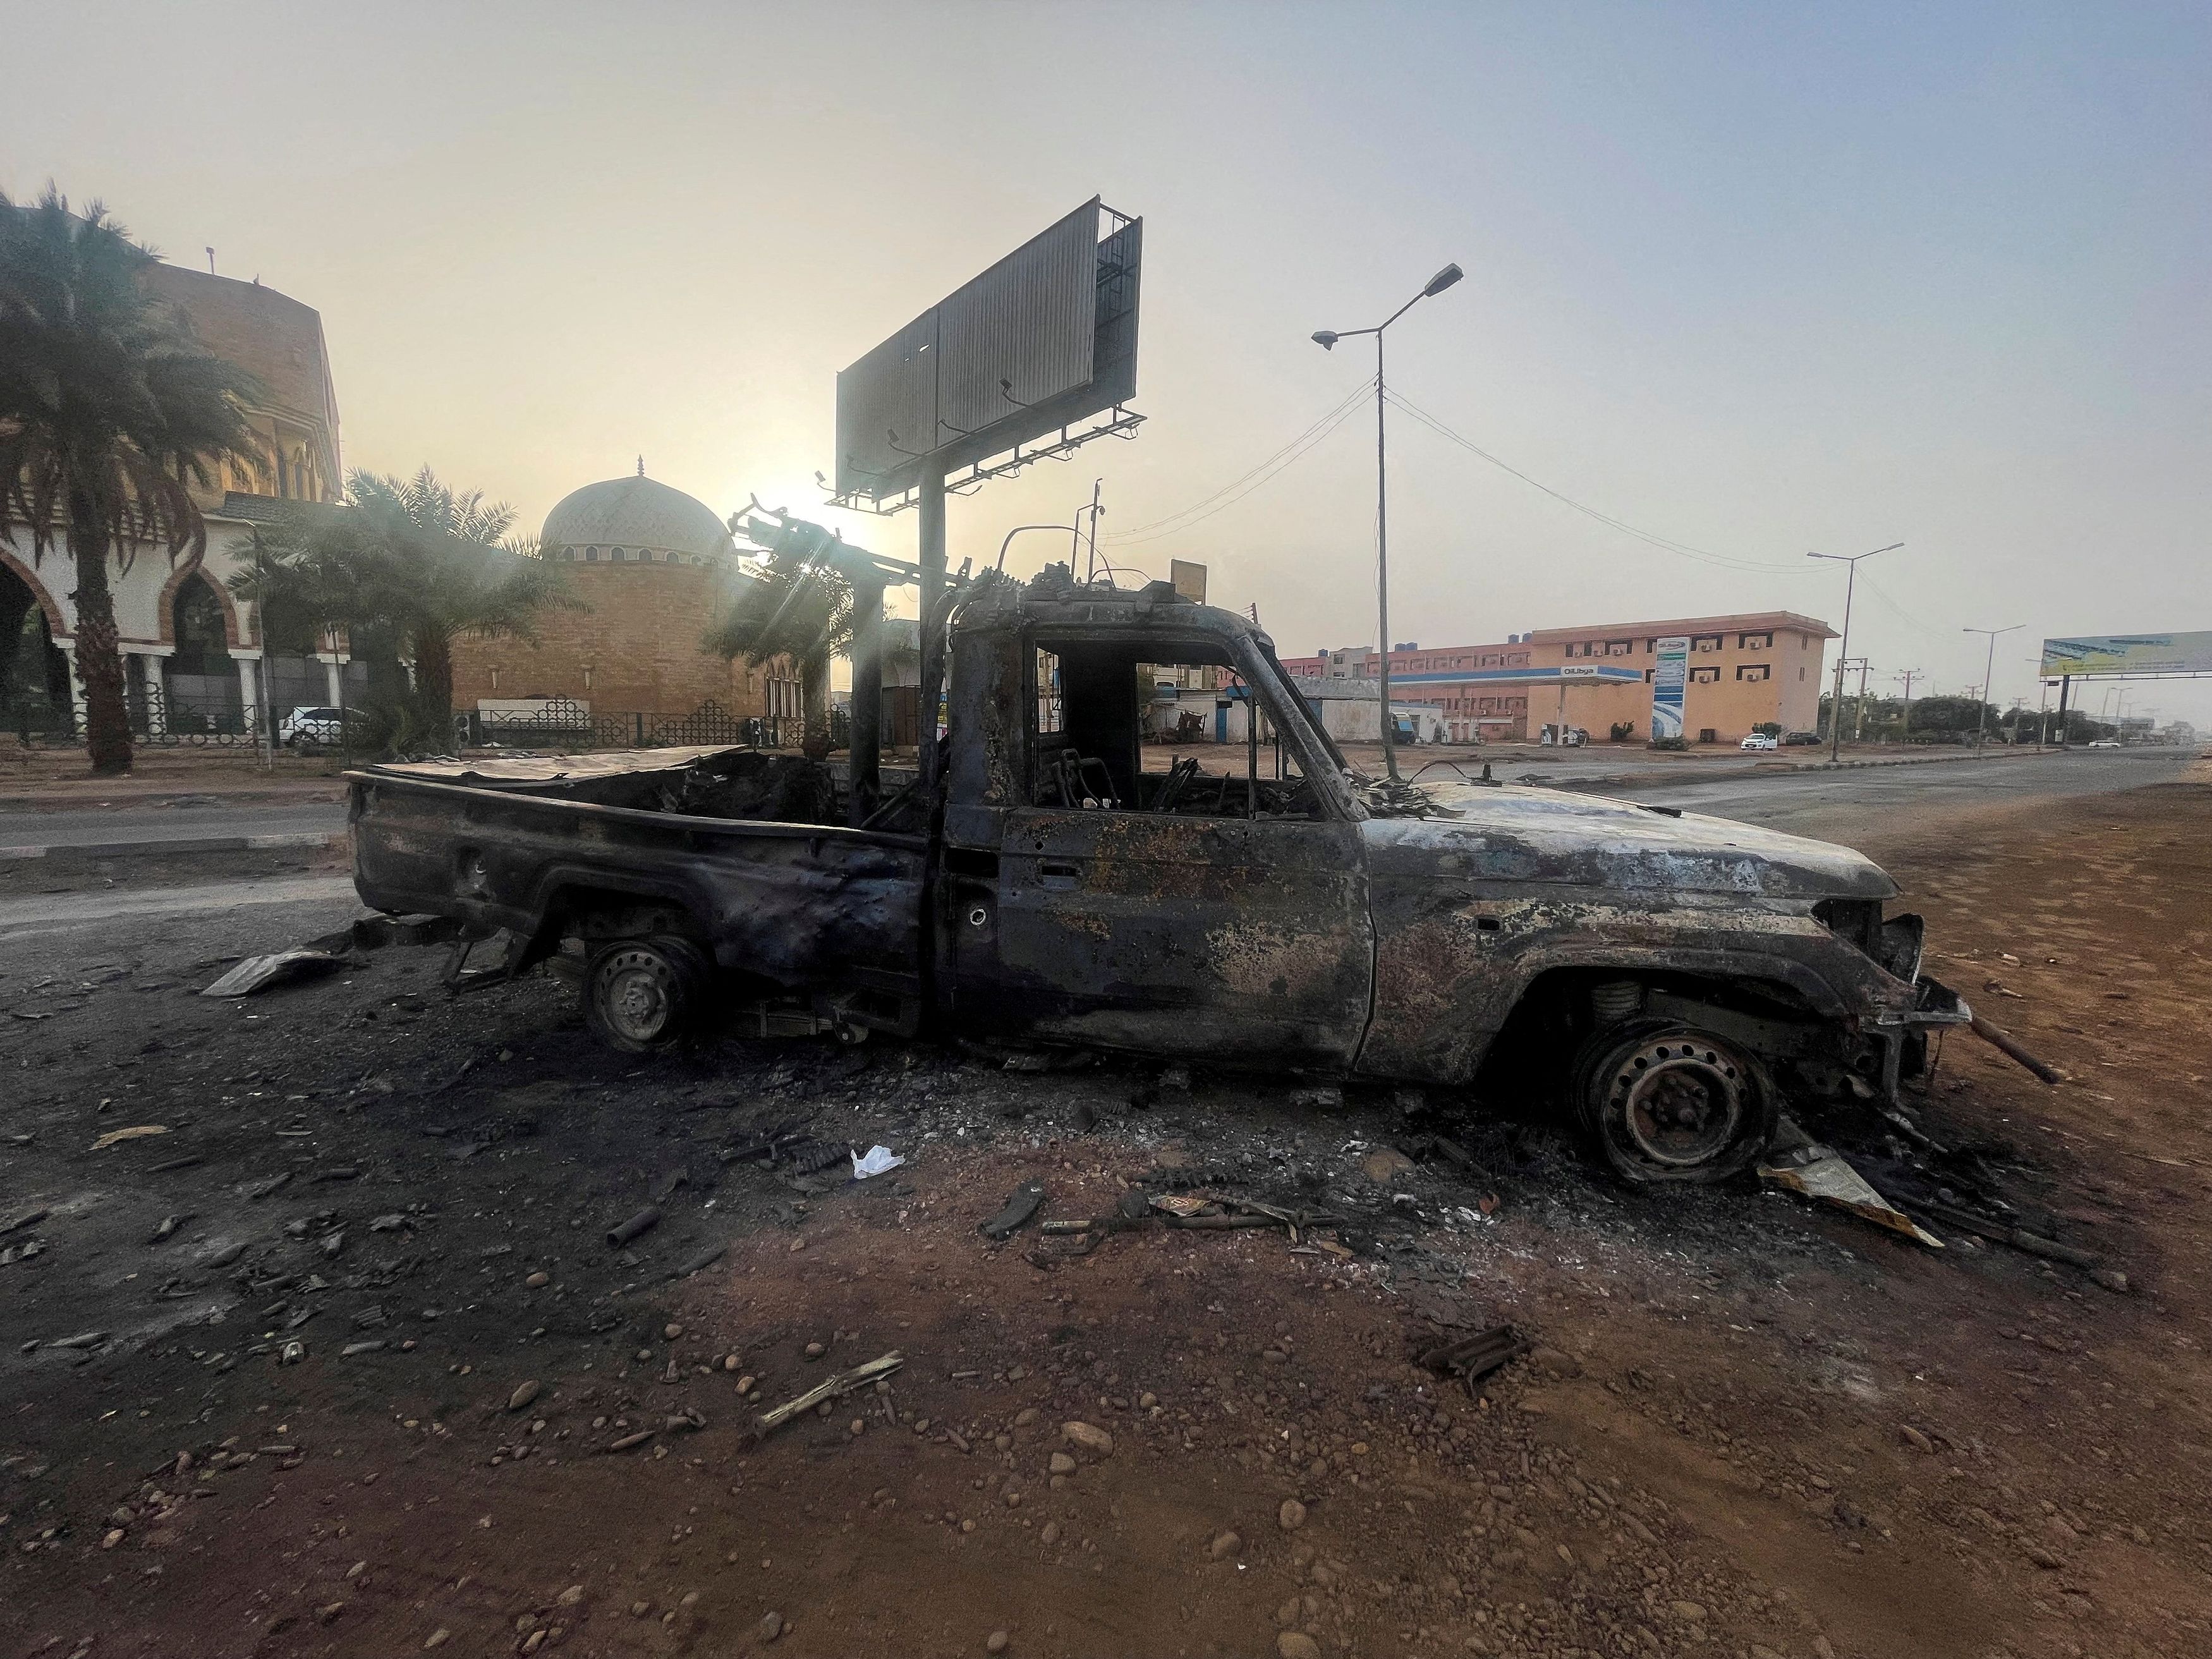 Πόλεμος στο Σουδάν: Σκληρές μάχες στα δυτικά του Χαρτούμ - Τι επιδιώκει ο στρατός